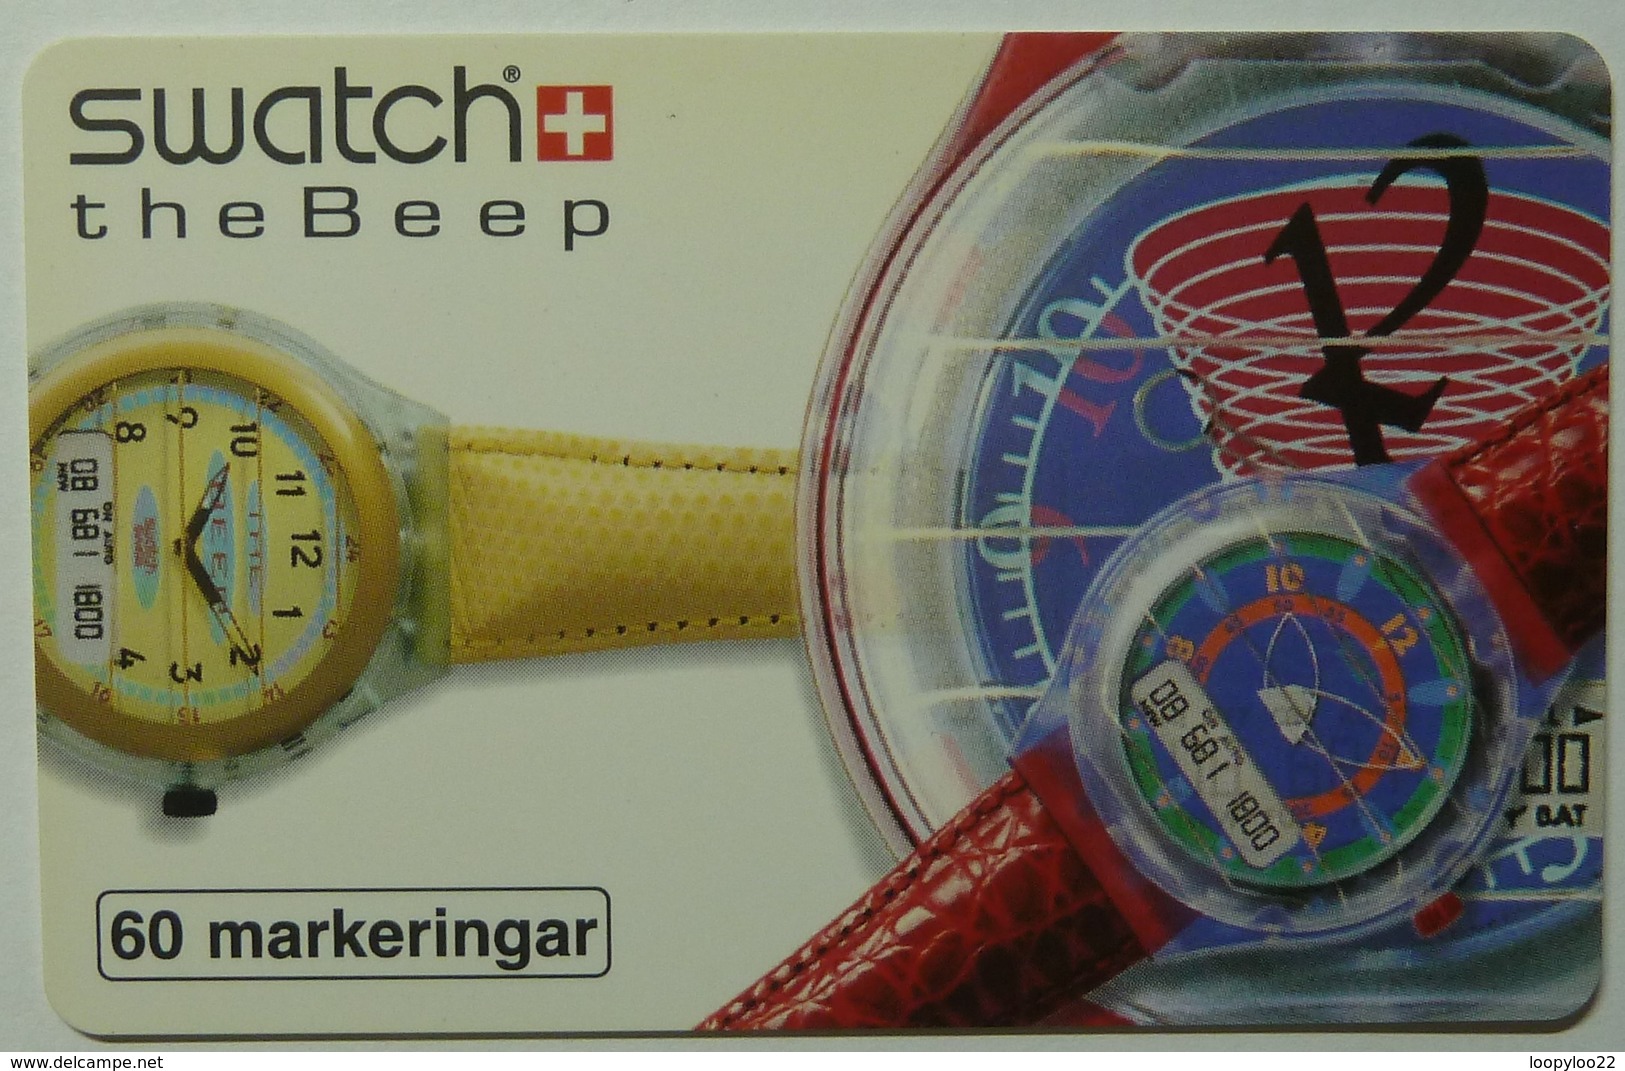 Sweden - Chip - Telia - Swatch The Beep - 60112/040 - 03.95 - 2500ex - Mint - Schweden